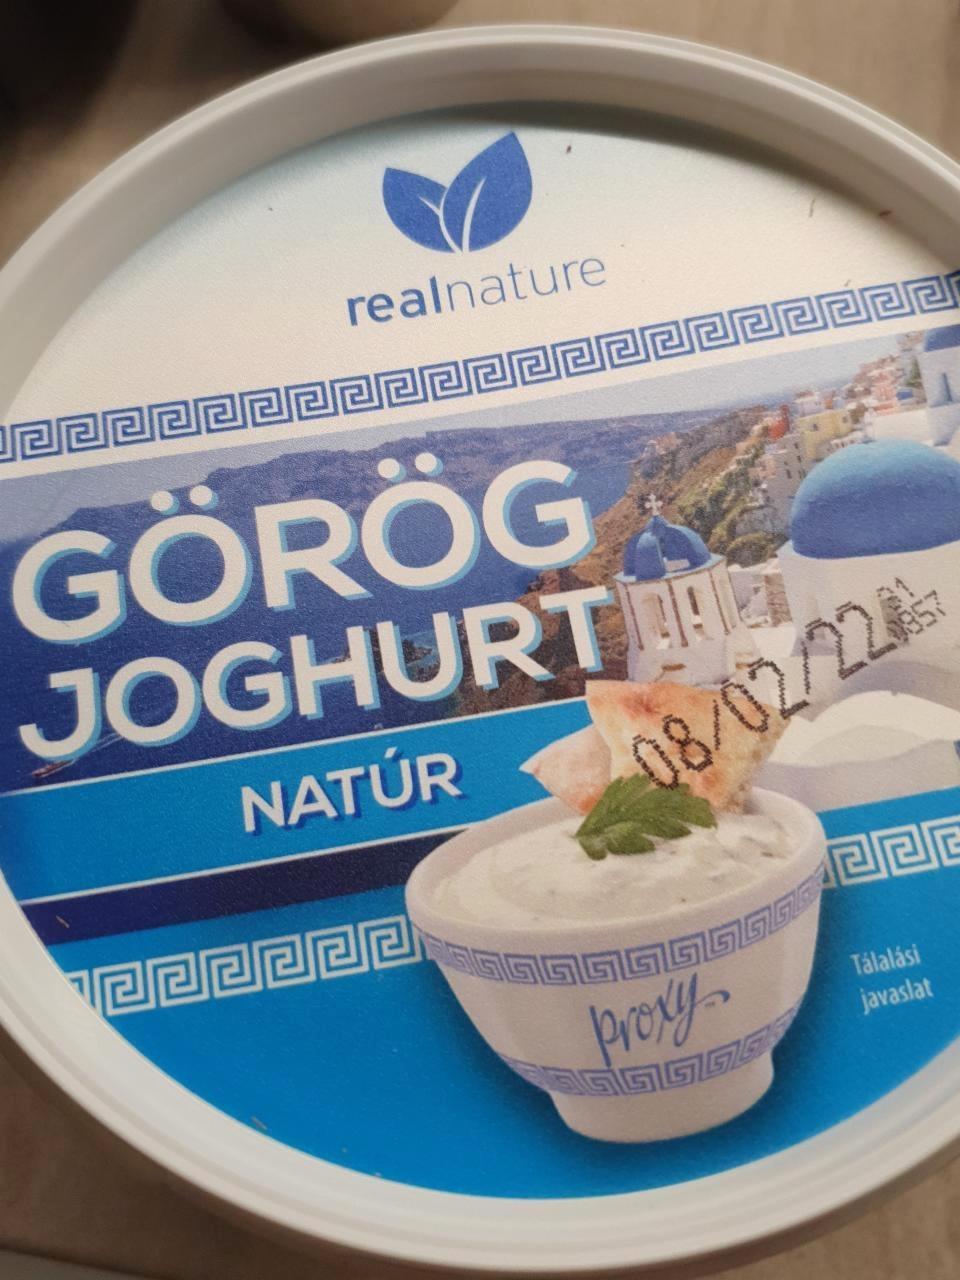 Képek - Görög joghurt Natúr Real nature